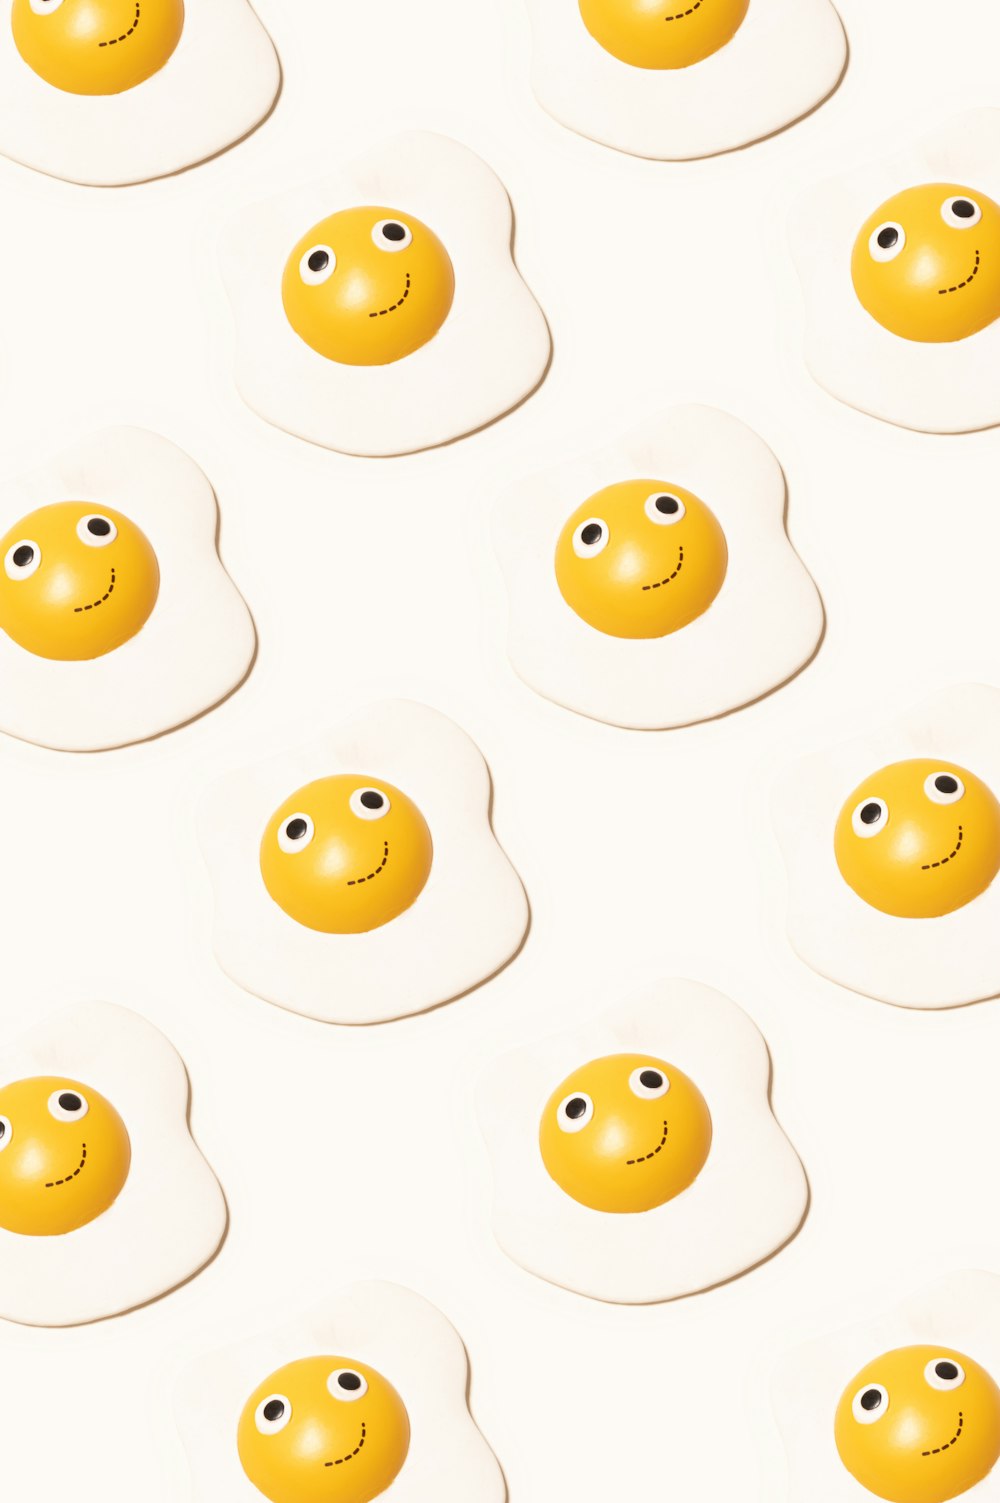 un grupo de huevos con caras dibujadas en ellos